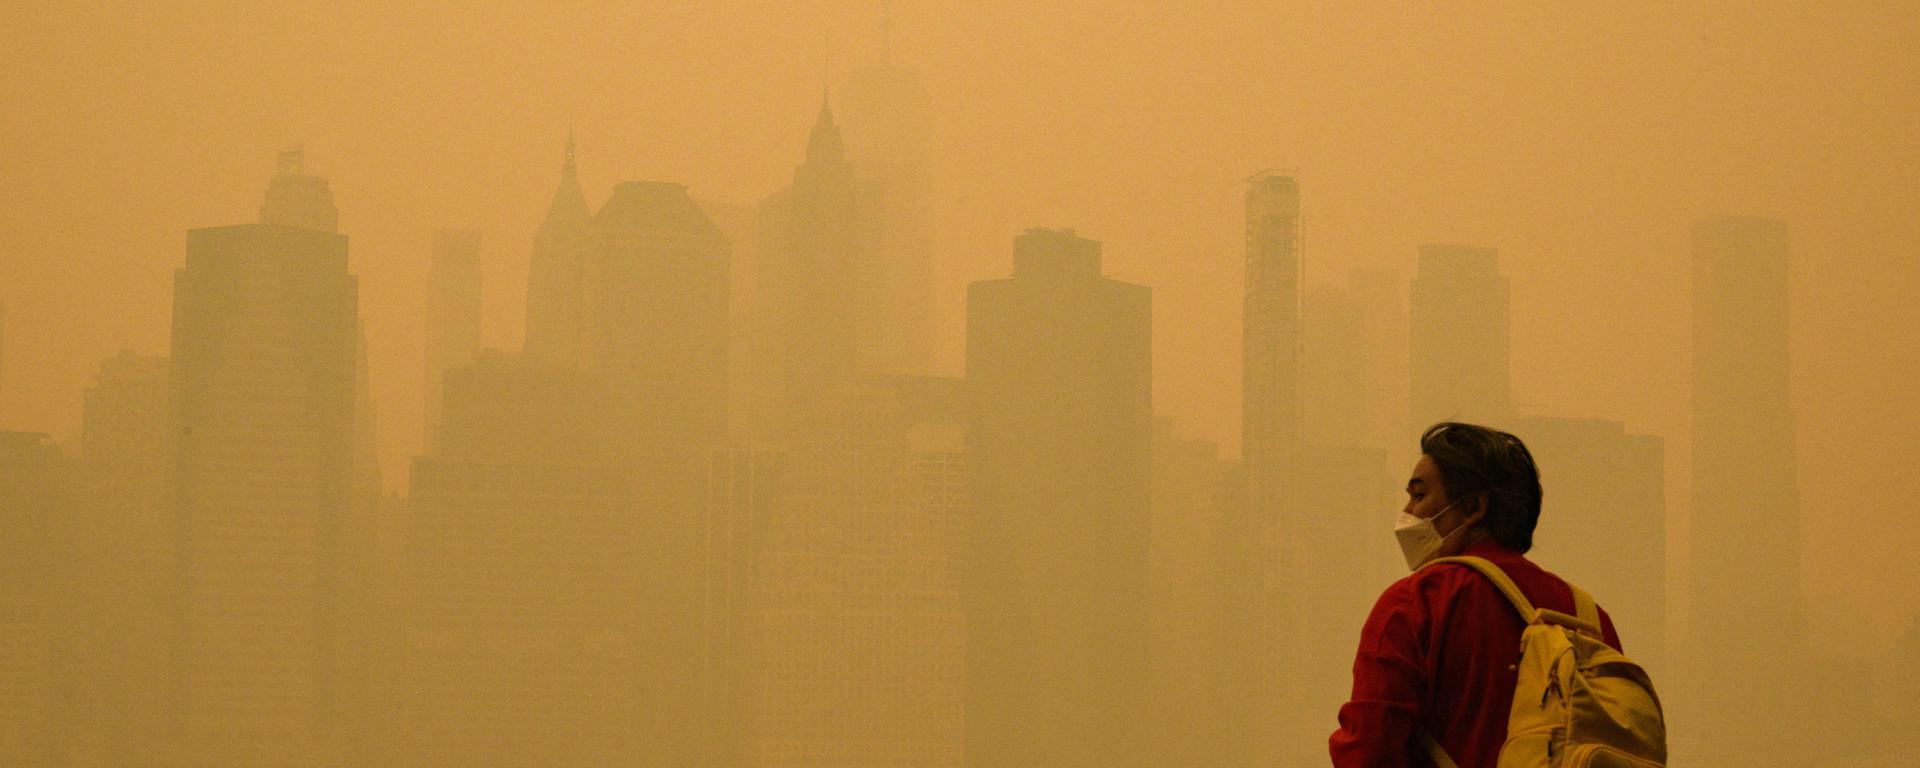 Humo tóxico invade Nueva York: “Estas partículas en el aire pueden producir envenenamiento”